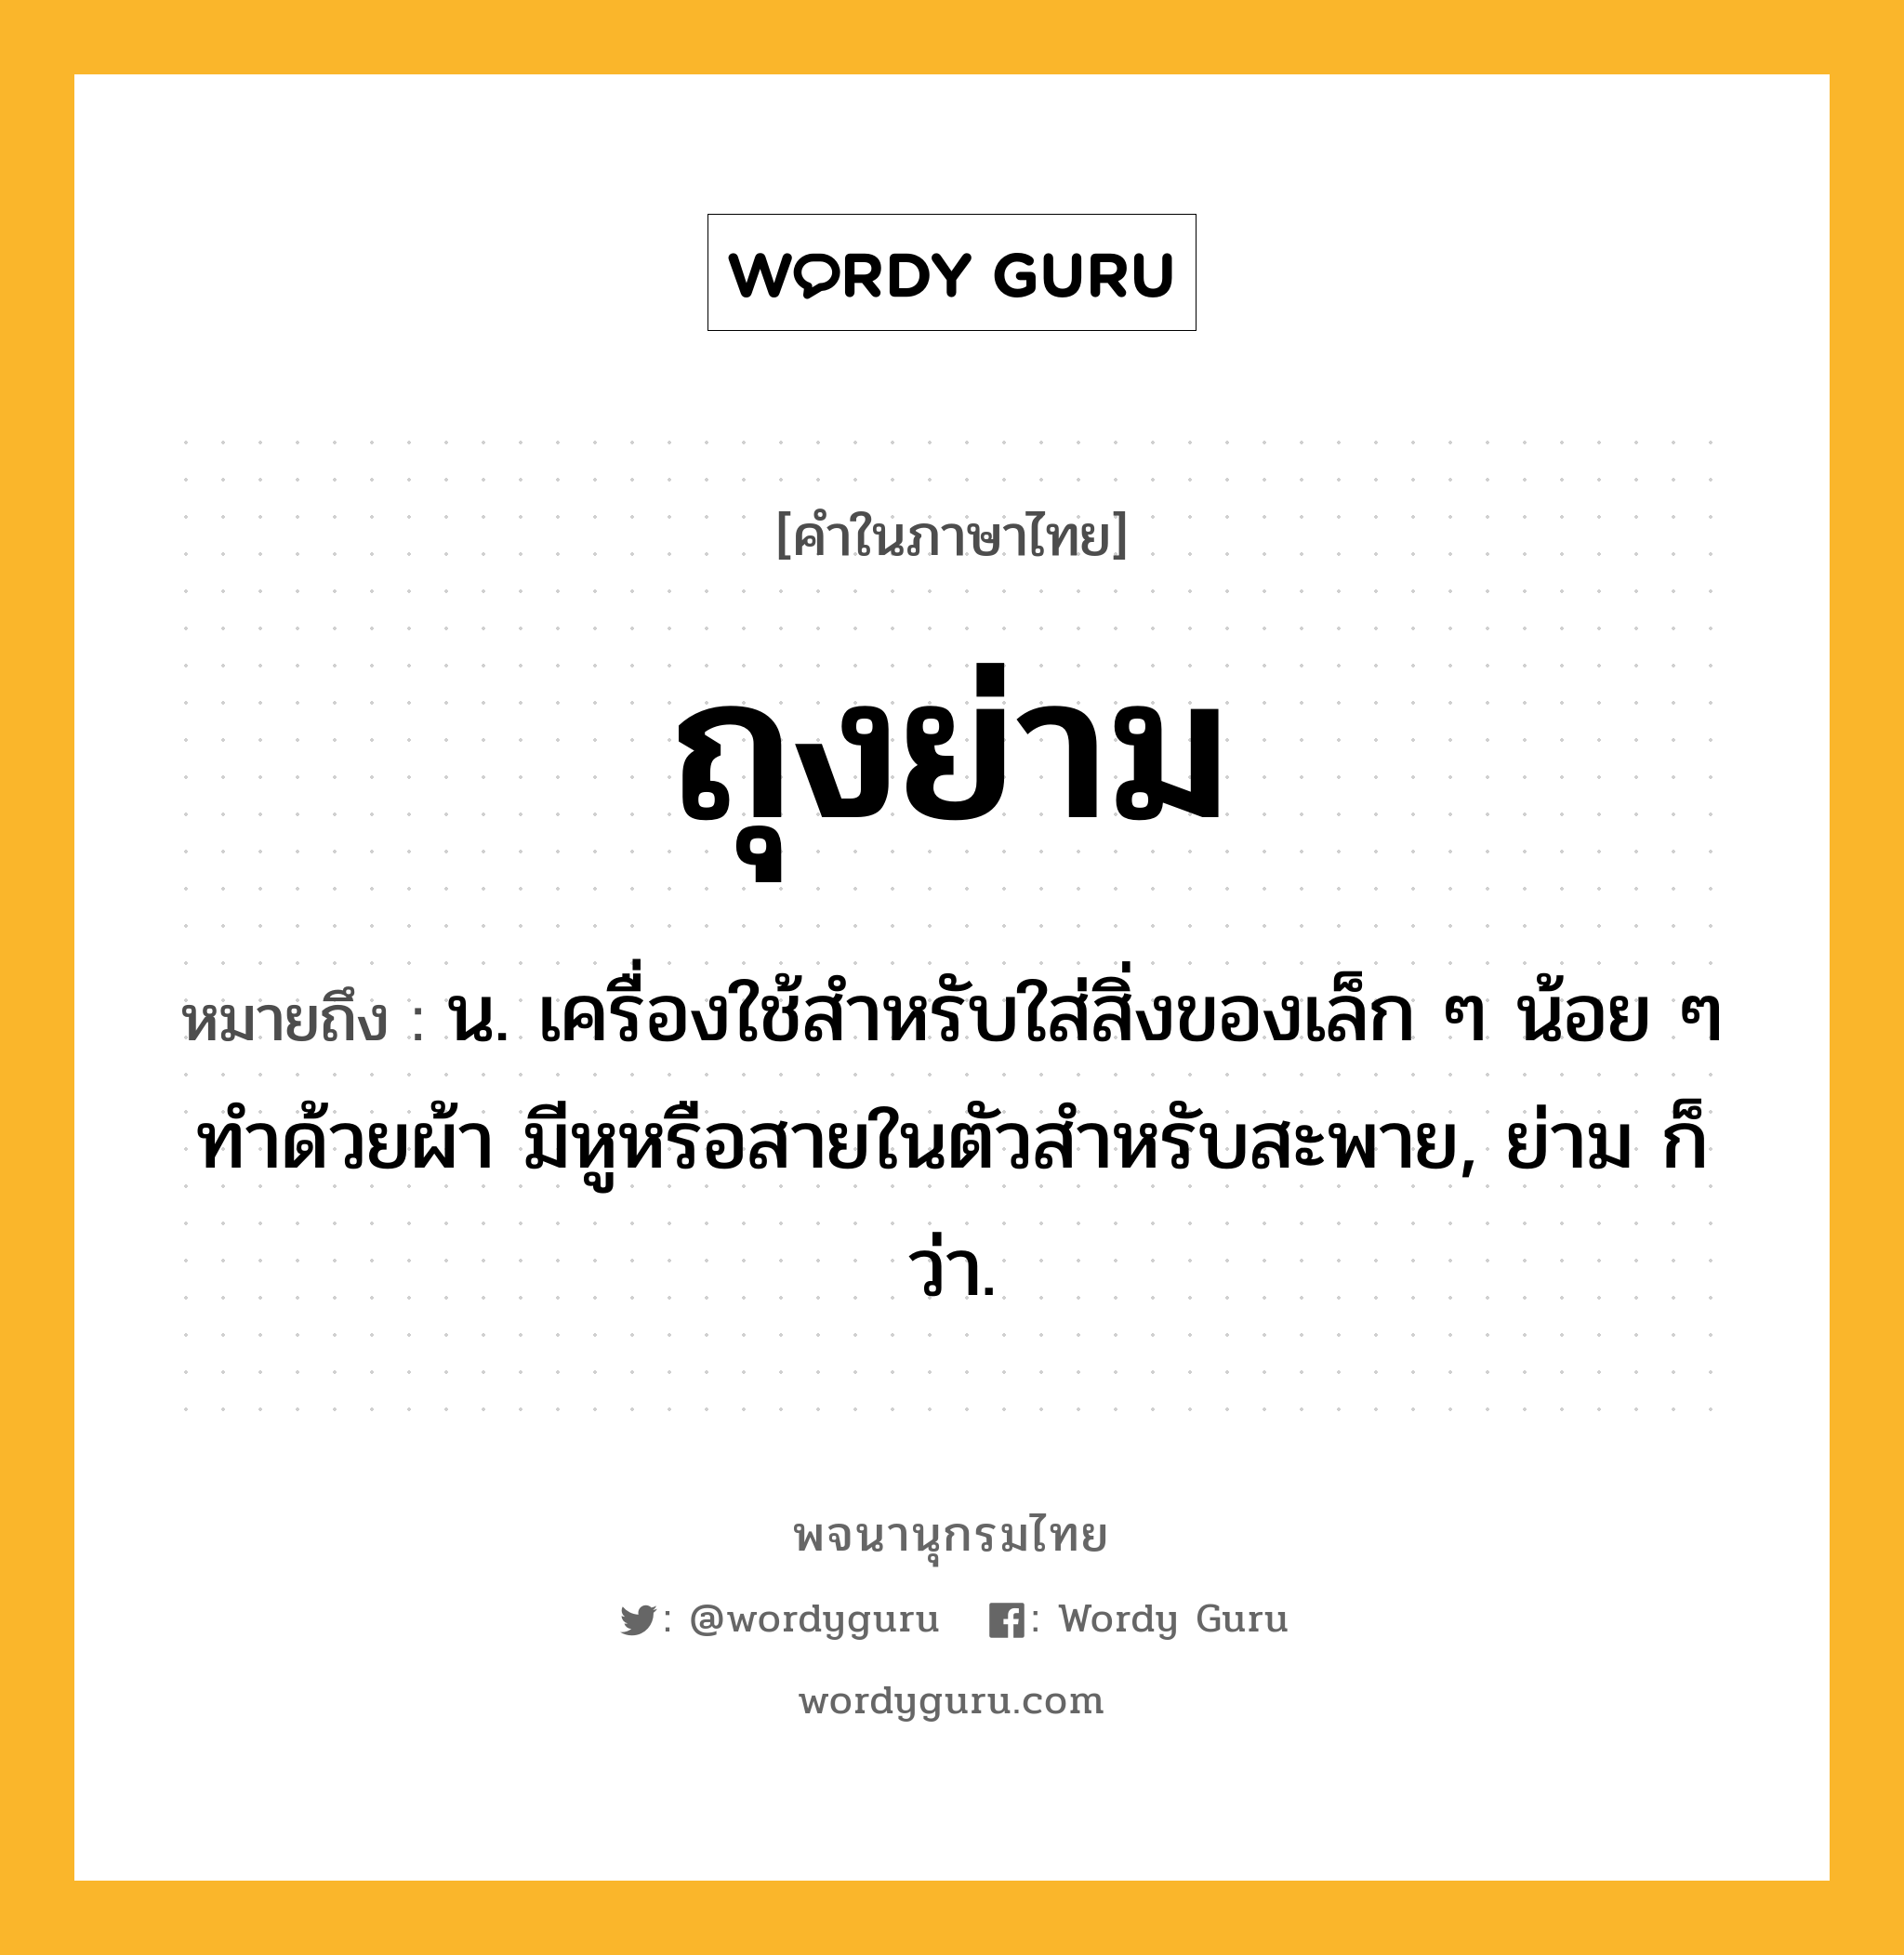 ถุงย่าม ความหมาย หมายถึงอะไร?, คำในภาษาไทย ถุงย่าม หมายถึง น. เครื่องใช้สําหรับใส่สิ่งของเล็ก ๆ น้อย ๆ ทําด้วยผ้า มีหูหรือสายในตัวสําหรับสะพาย, ย่าม ก็ว่า.